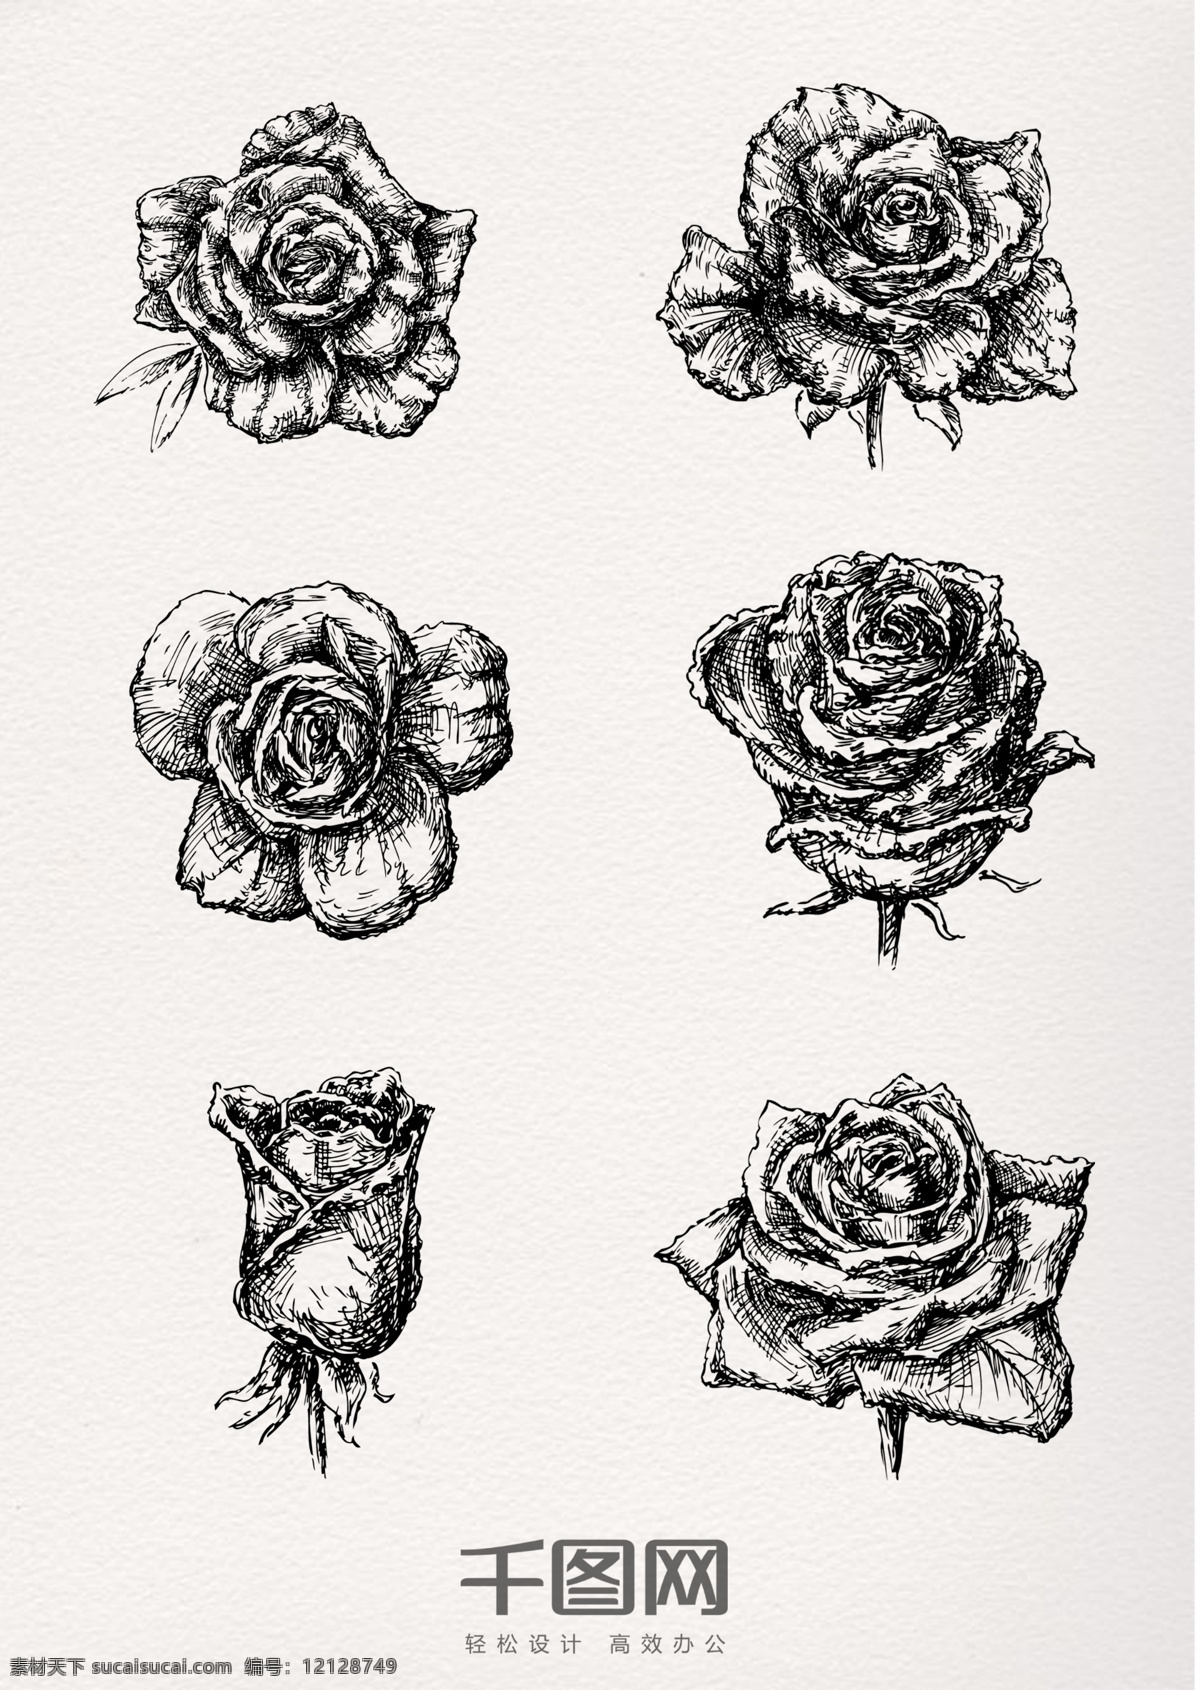 手绘 素描 立体 玫瑰花 铅笔画 玫瑰 植物 花朵 花苞 花骨朵 黑白